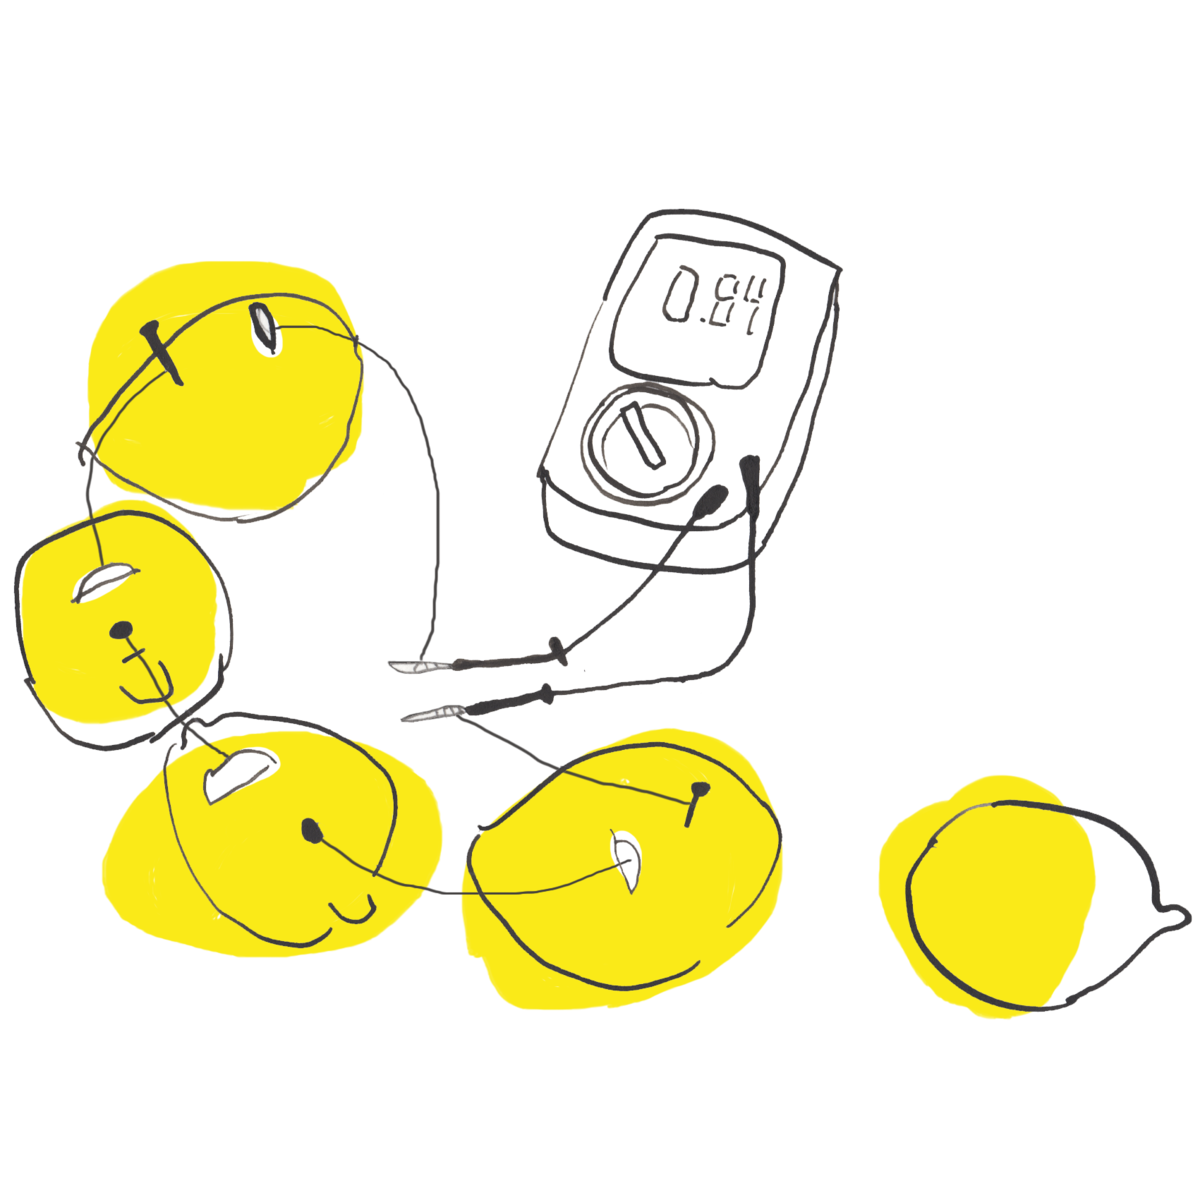 Multimeter measuring lemons